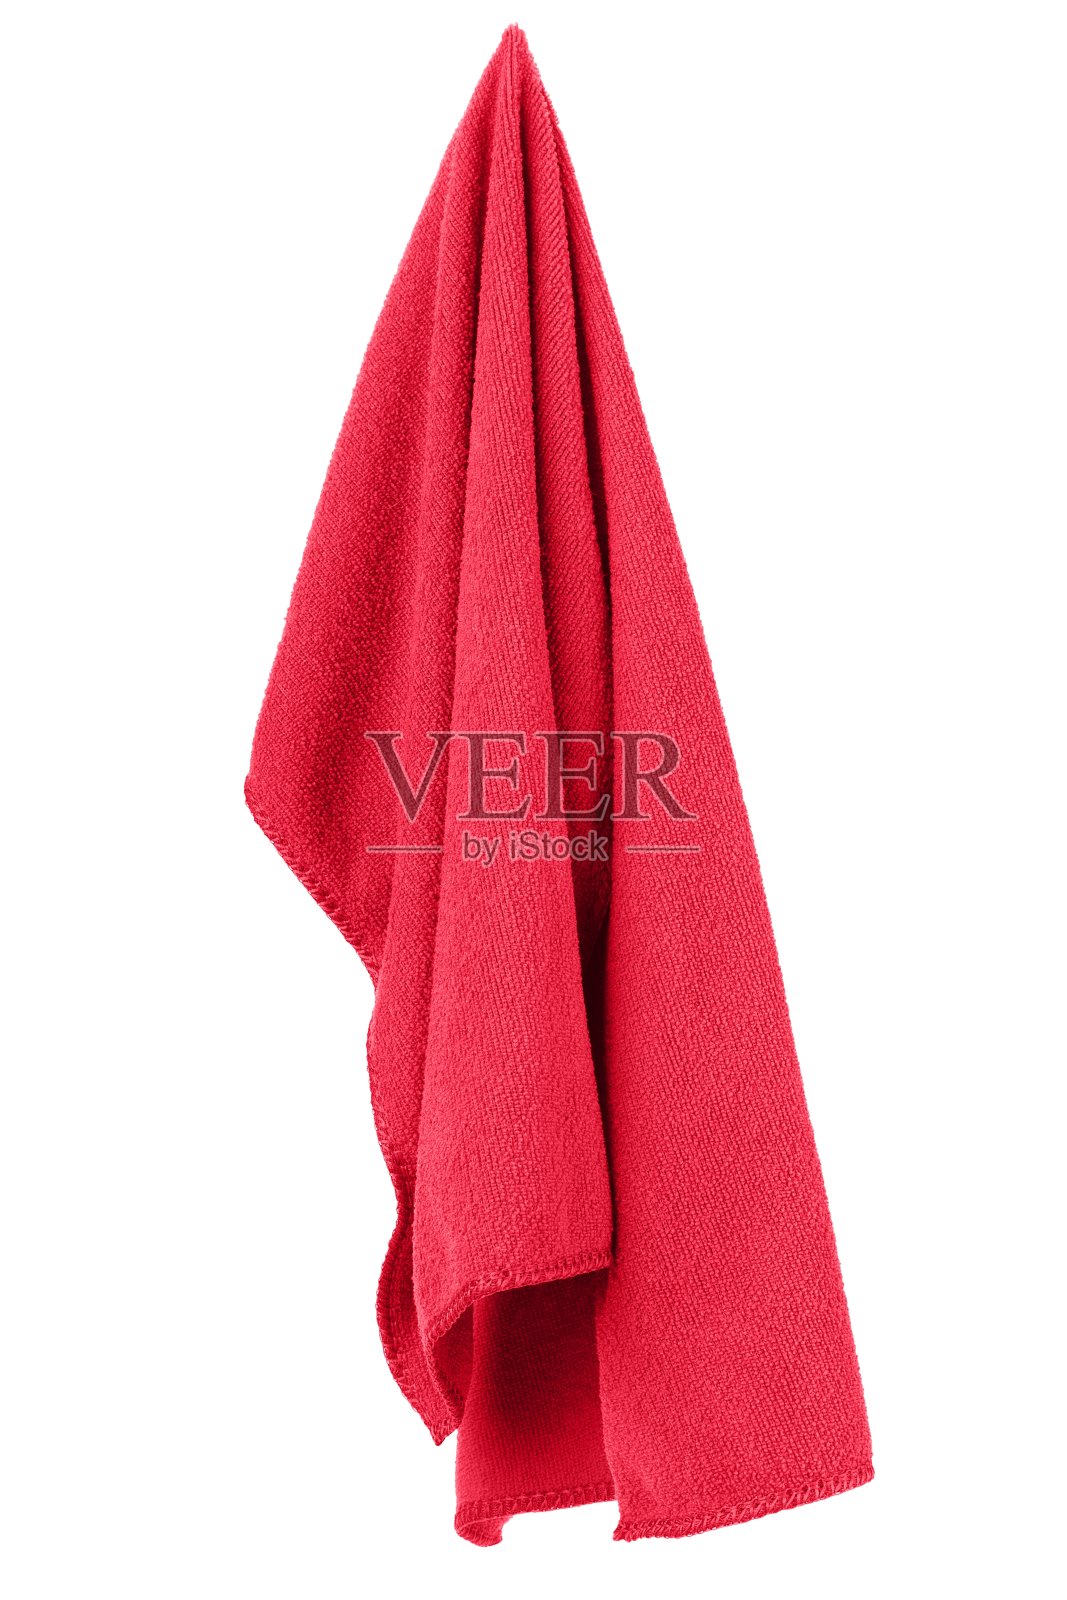 挂着红色的干净毛巾照片摄影图片